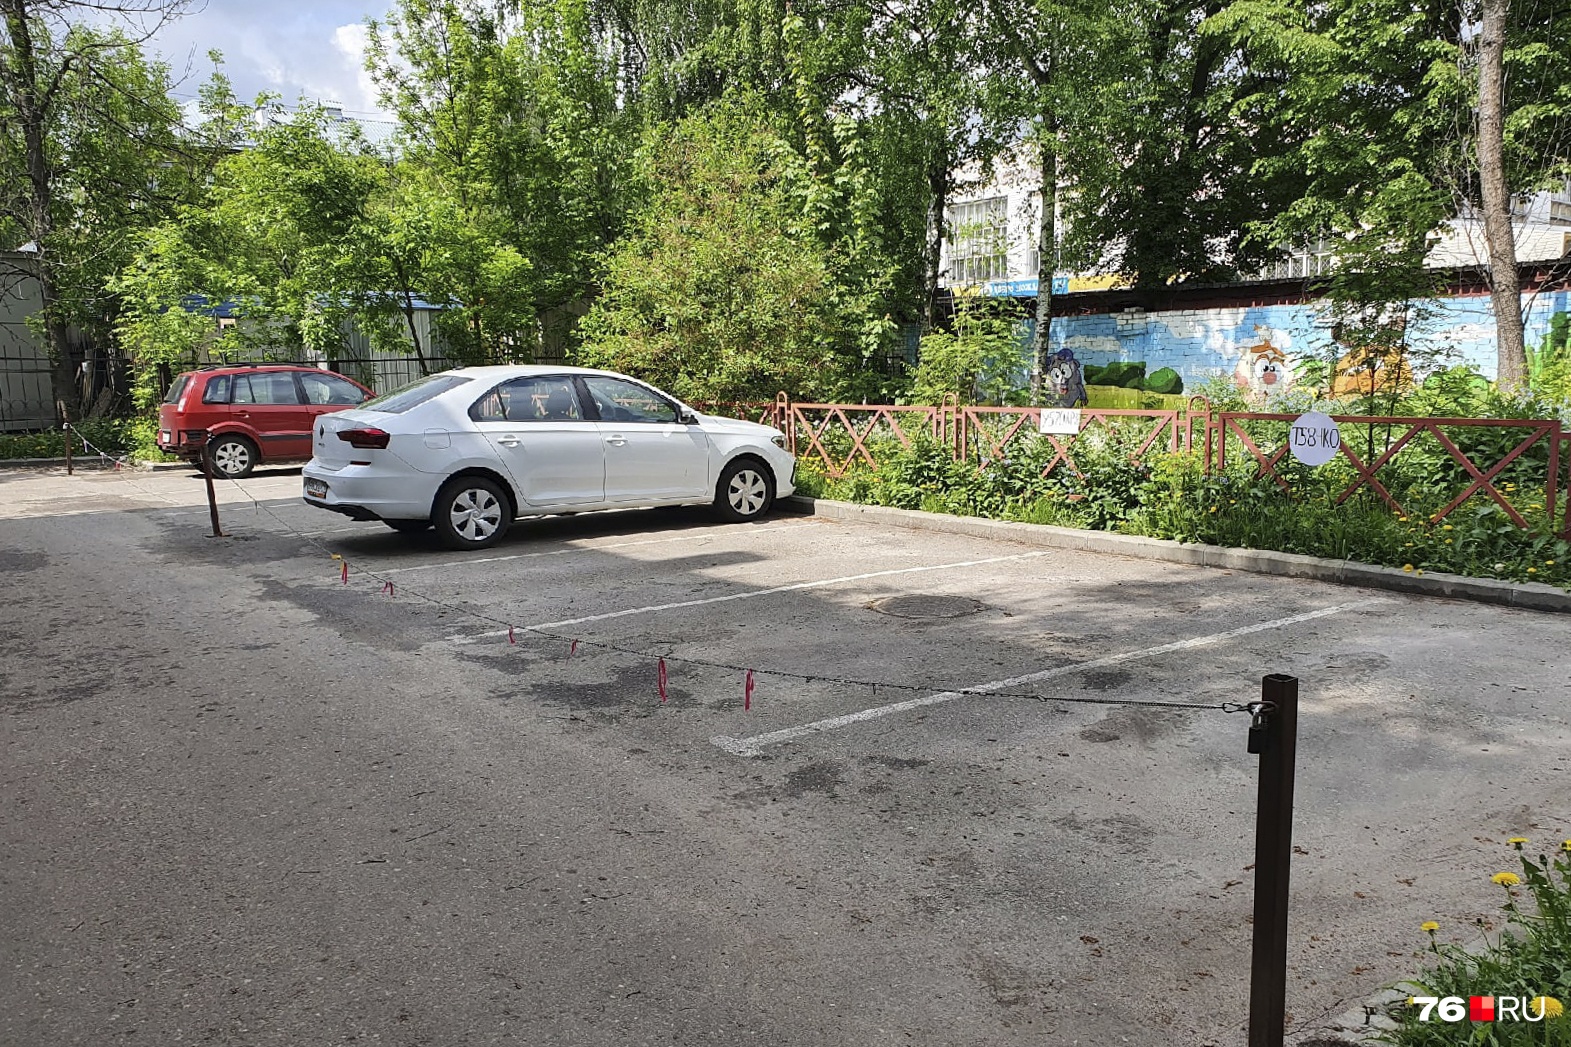 На Угличской, 4 парковочные места закреплены за машинами